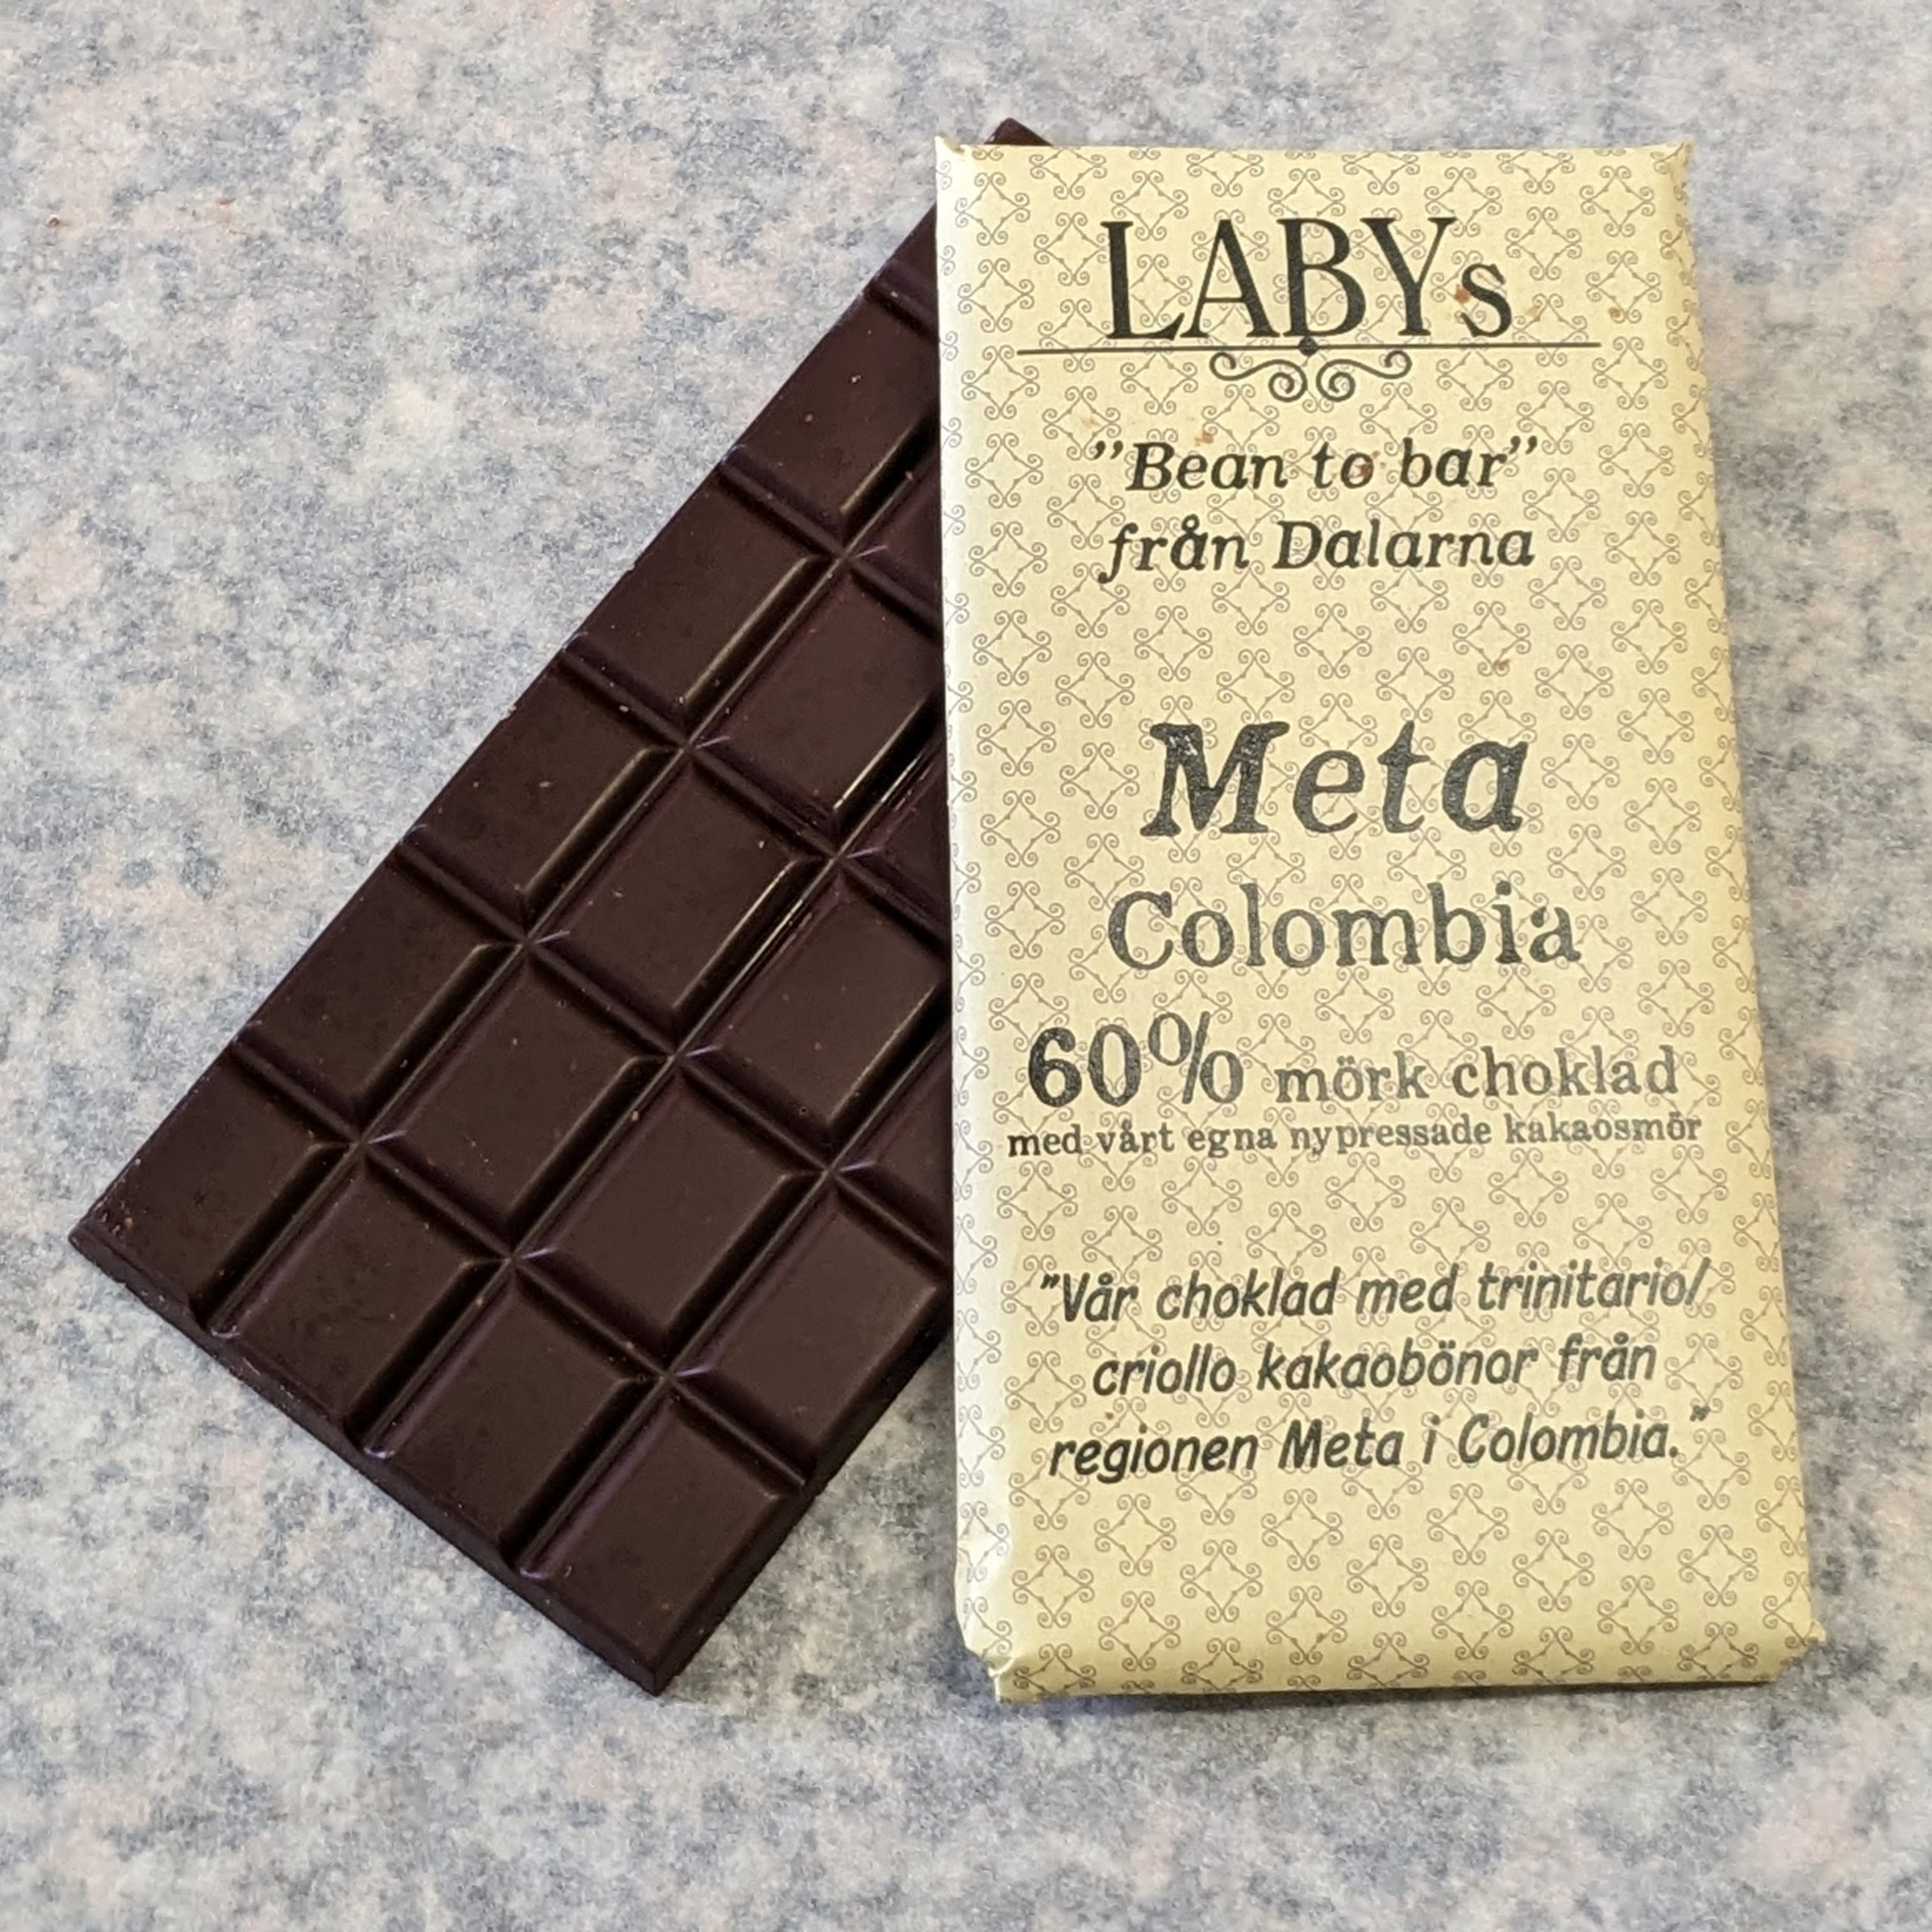 Meta – Colombia, 60% mörk choklad